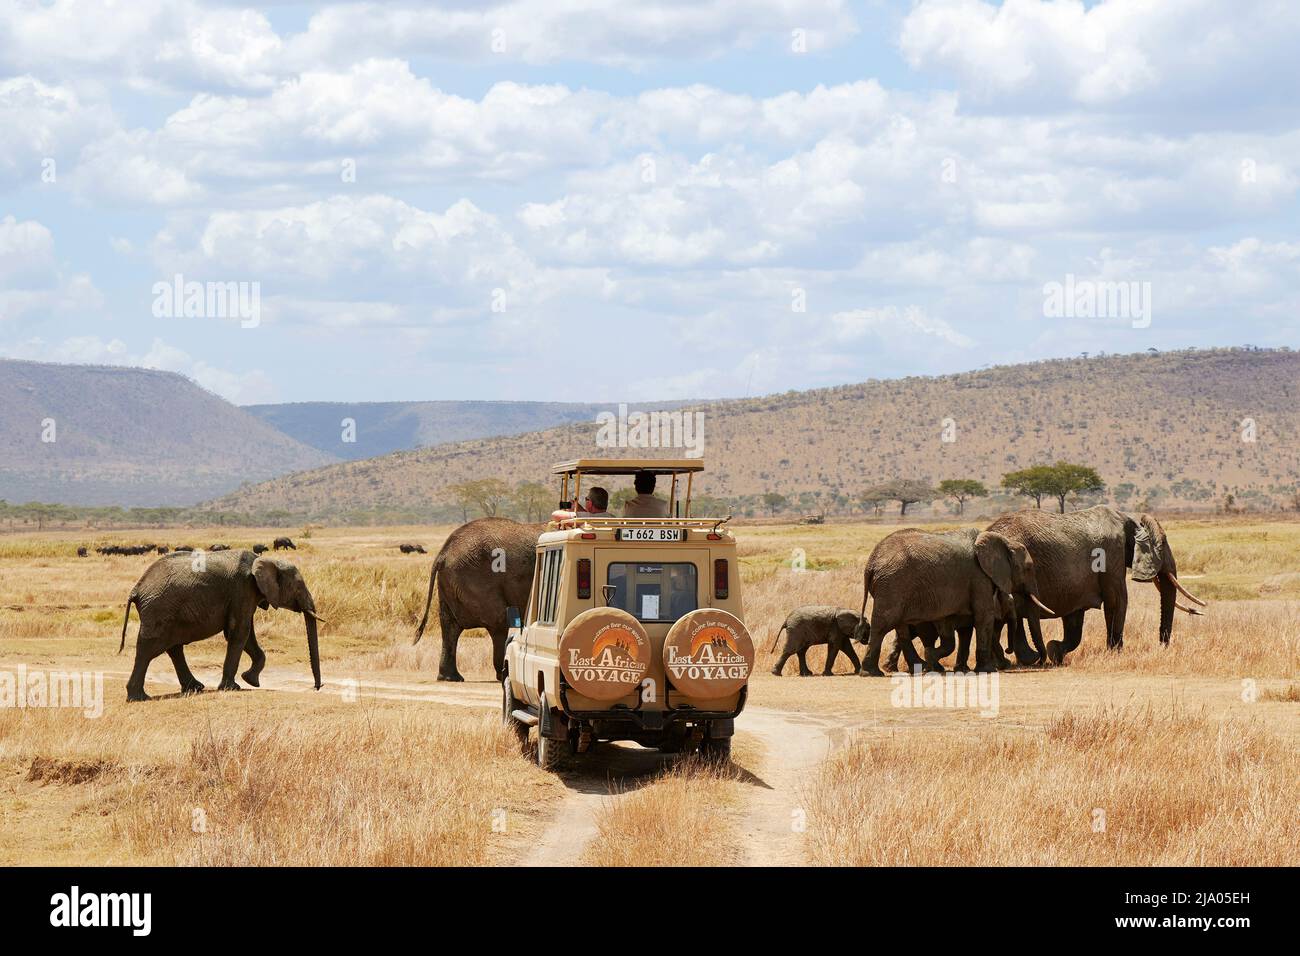 Ein Geländewagen im Geländewagen wartet auf eine Gruppe von Elefanten, die die Straße überqueren, im Central Serengeti National Park, Tansania, Afrika. Stockfoto